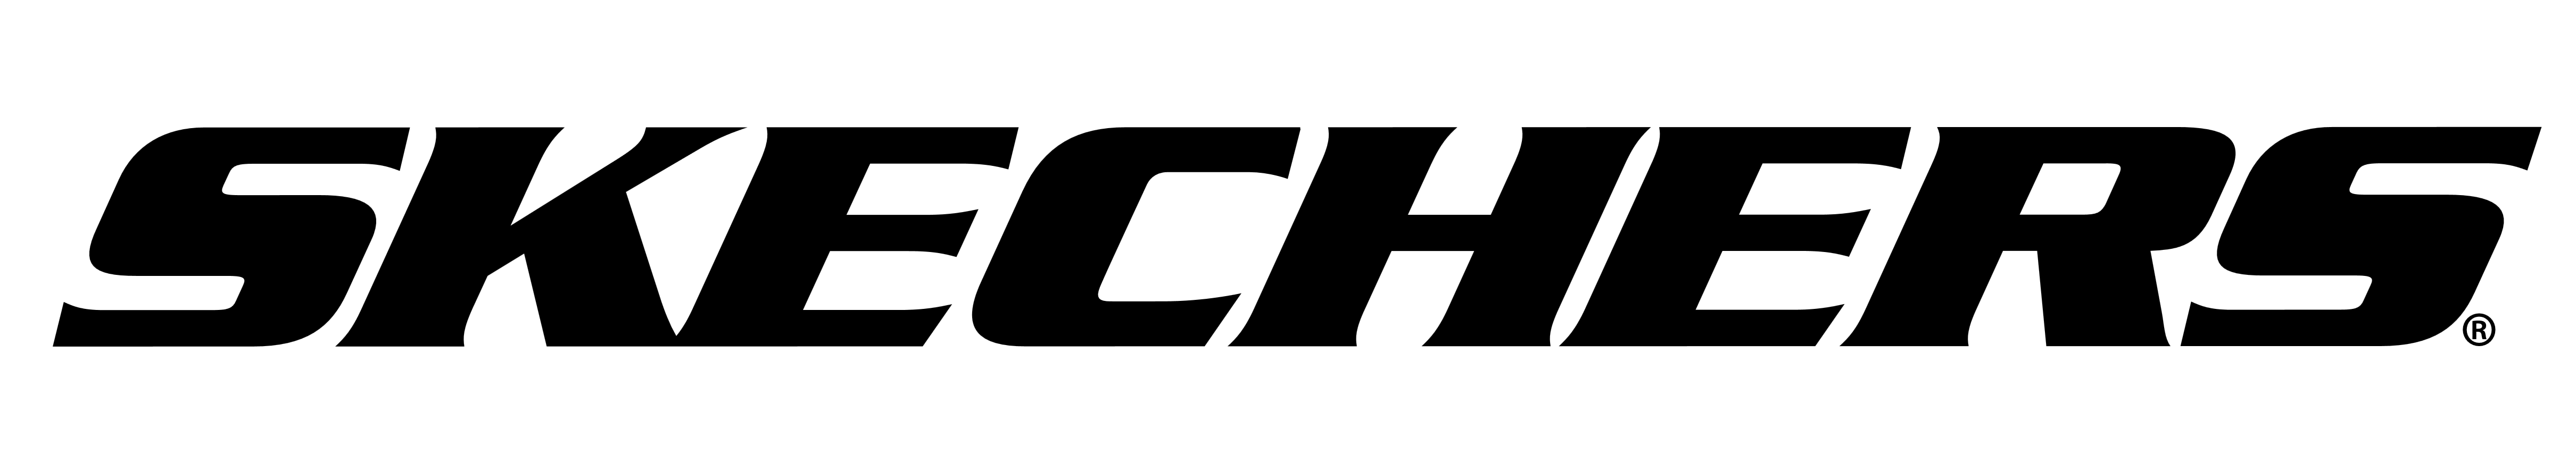 skechers logo 2018